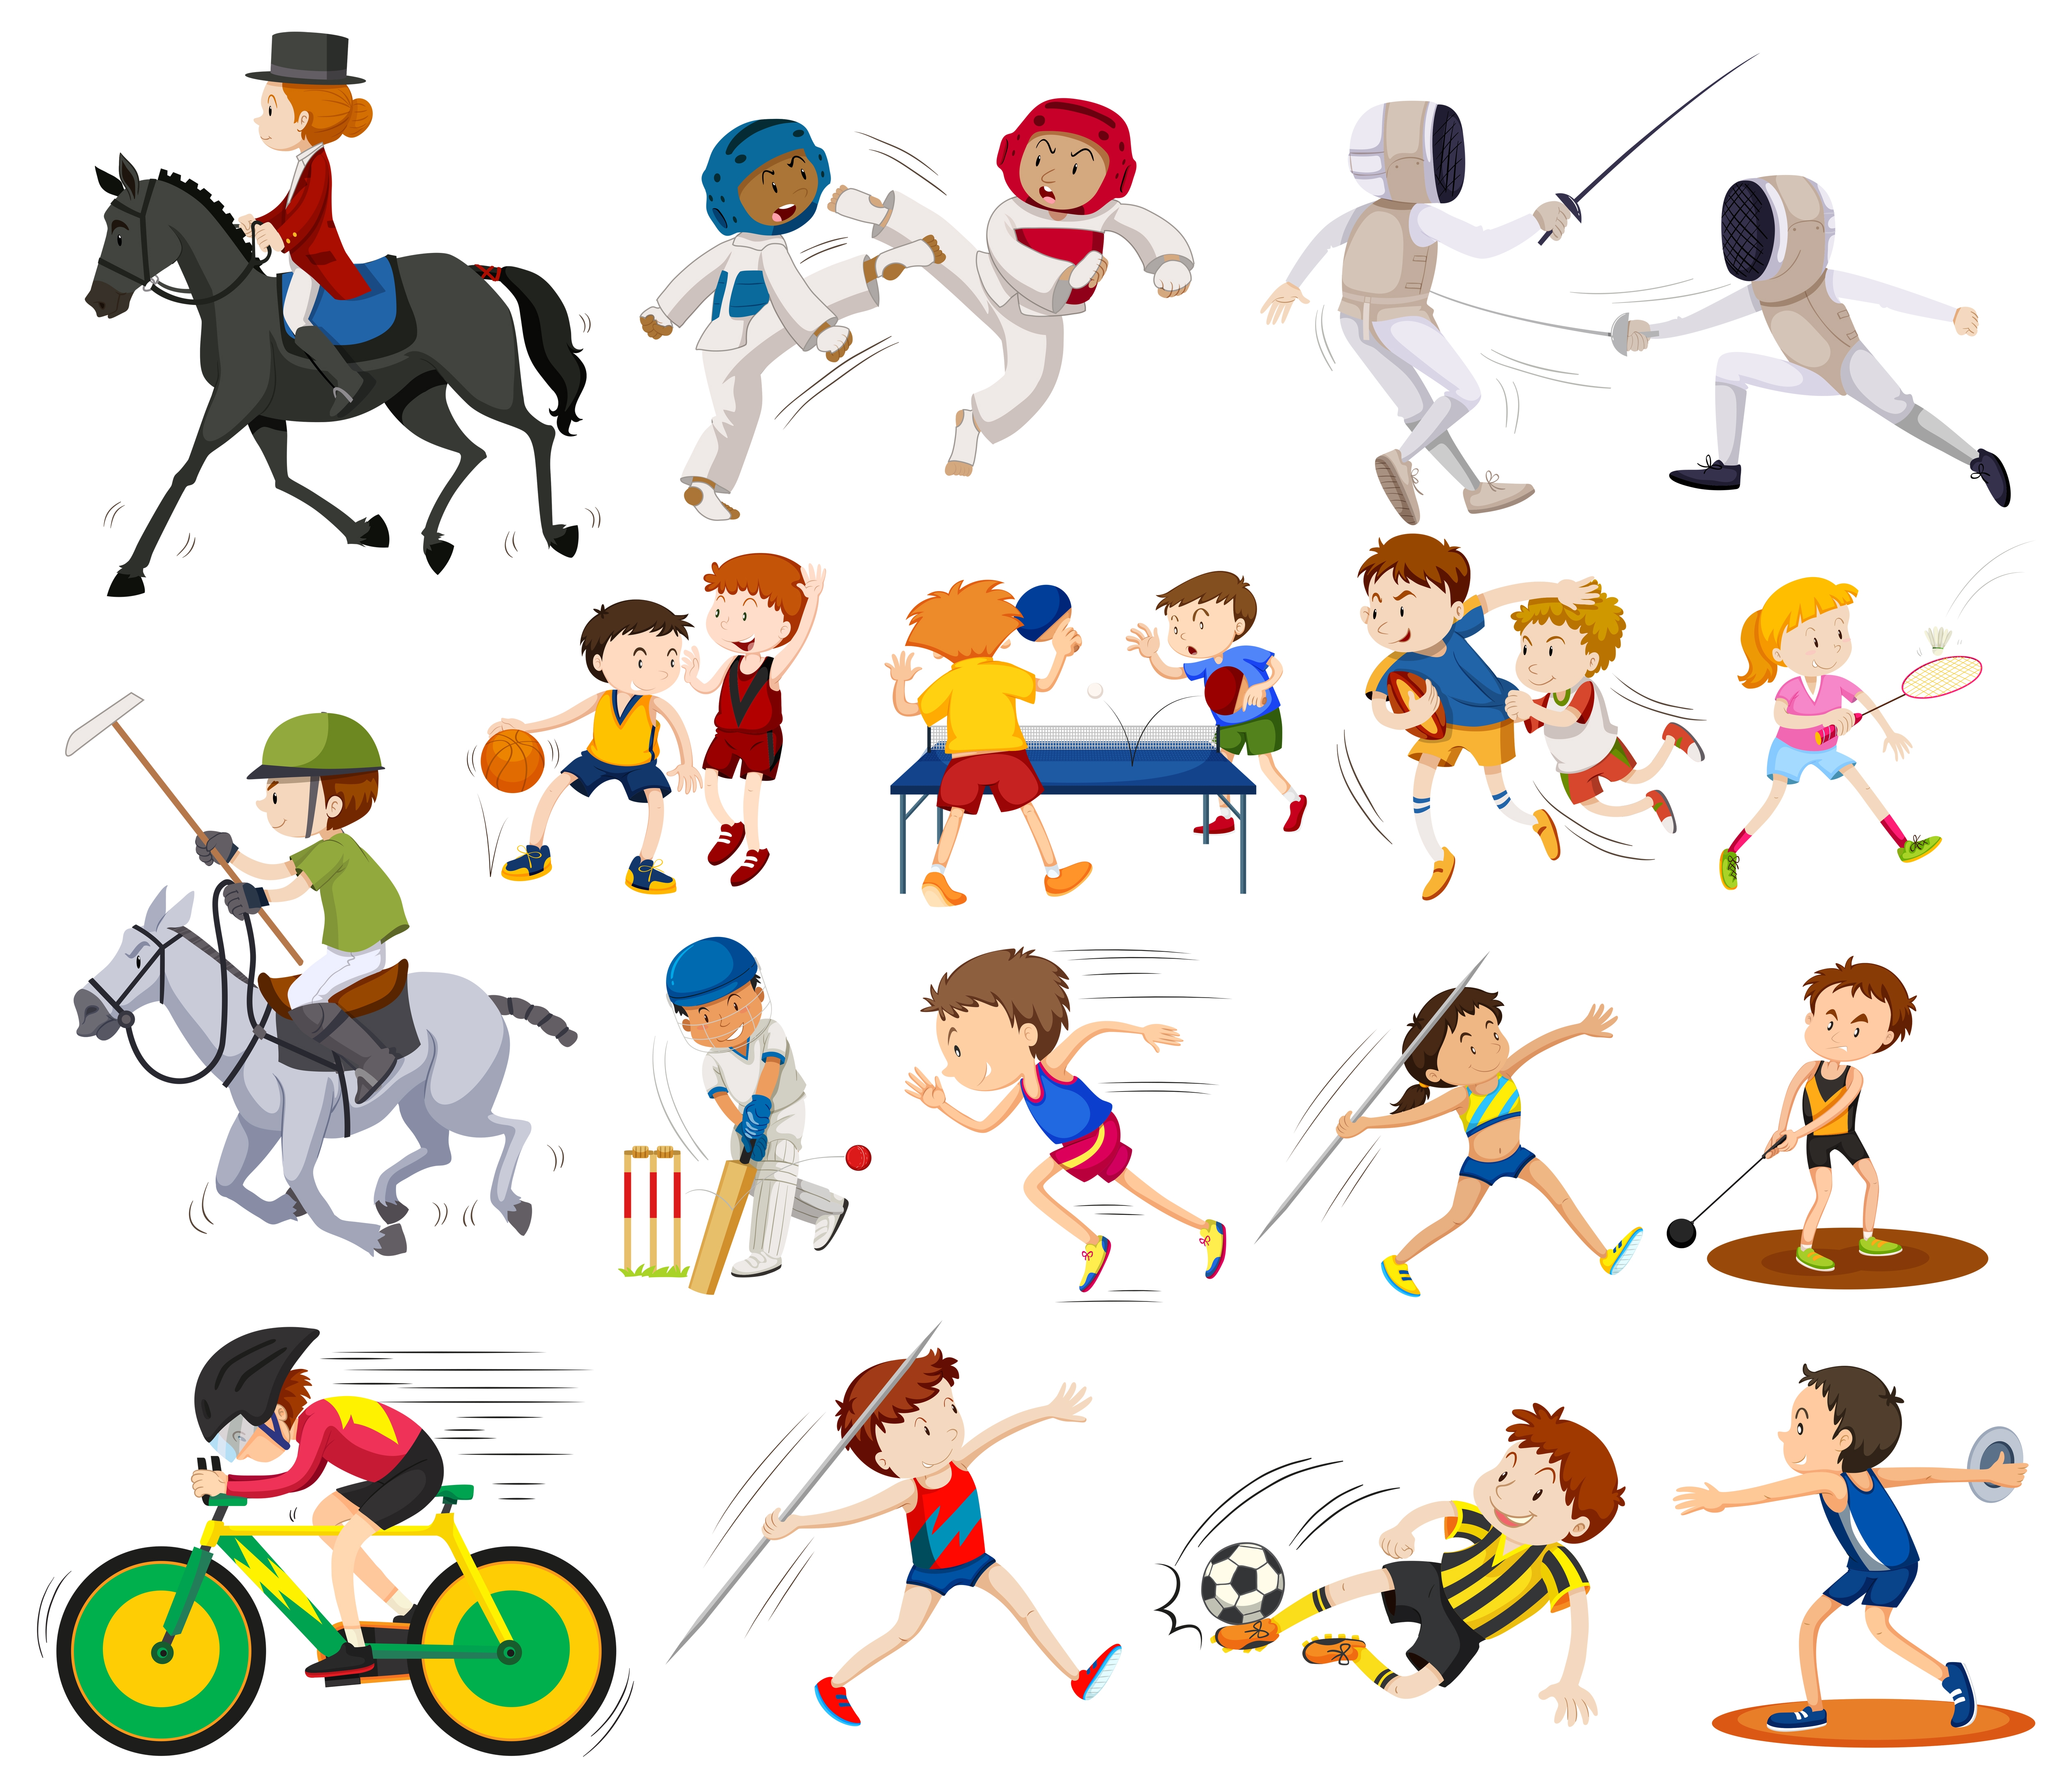 Иллюстрации о различных видах спорта